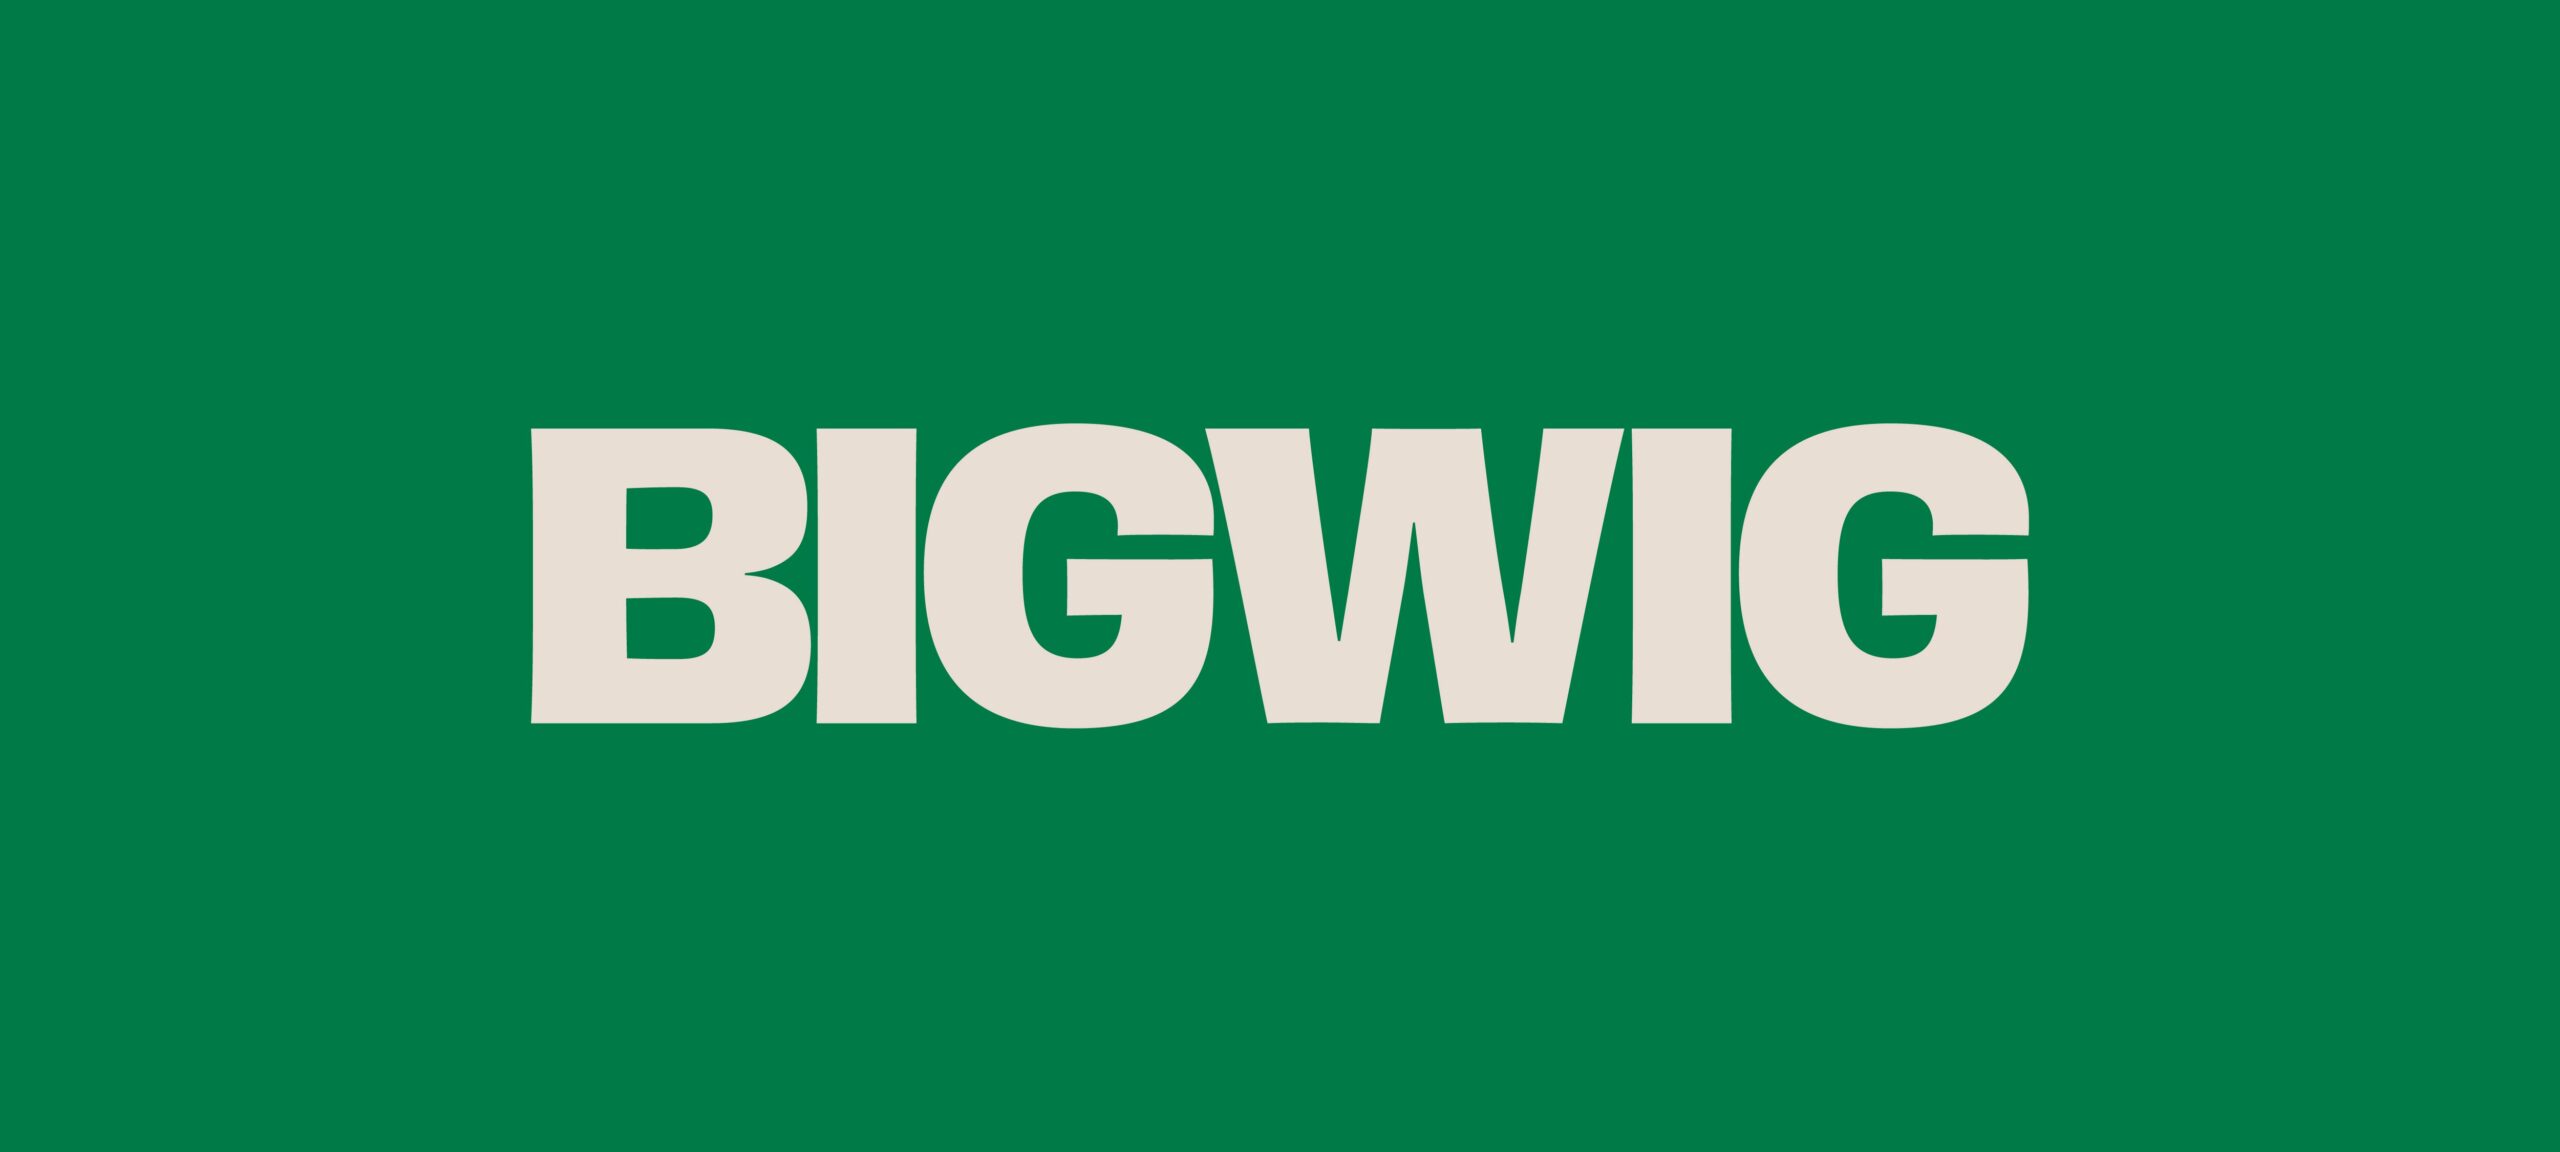 Bigwig-02